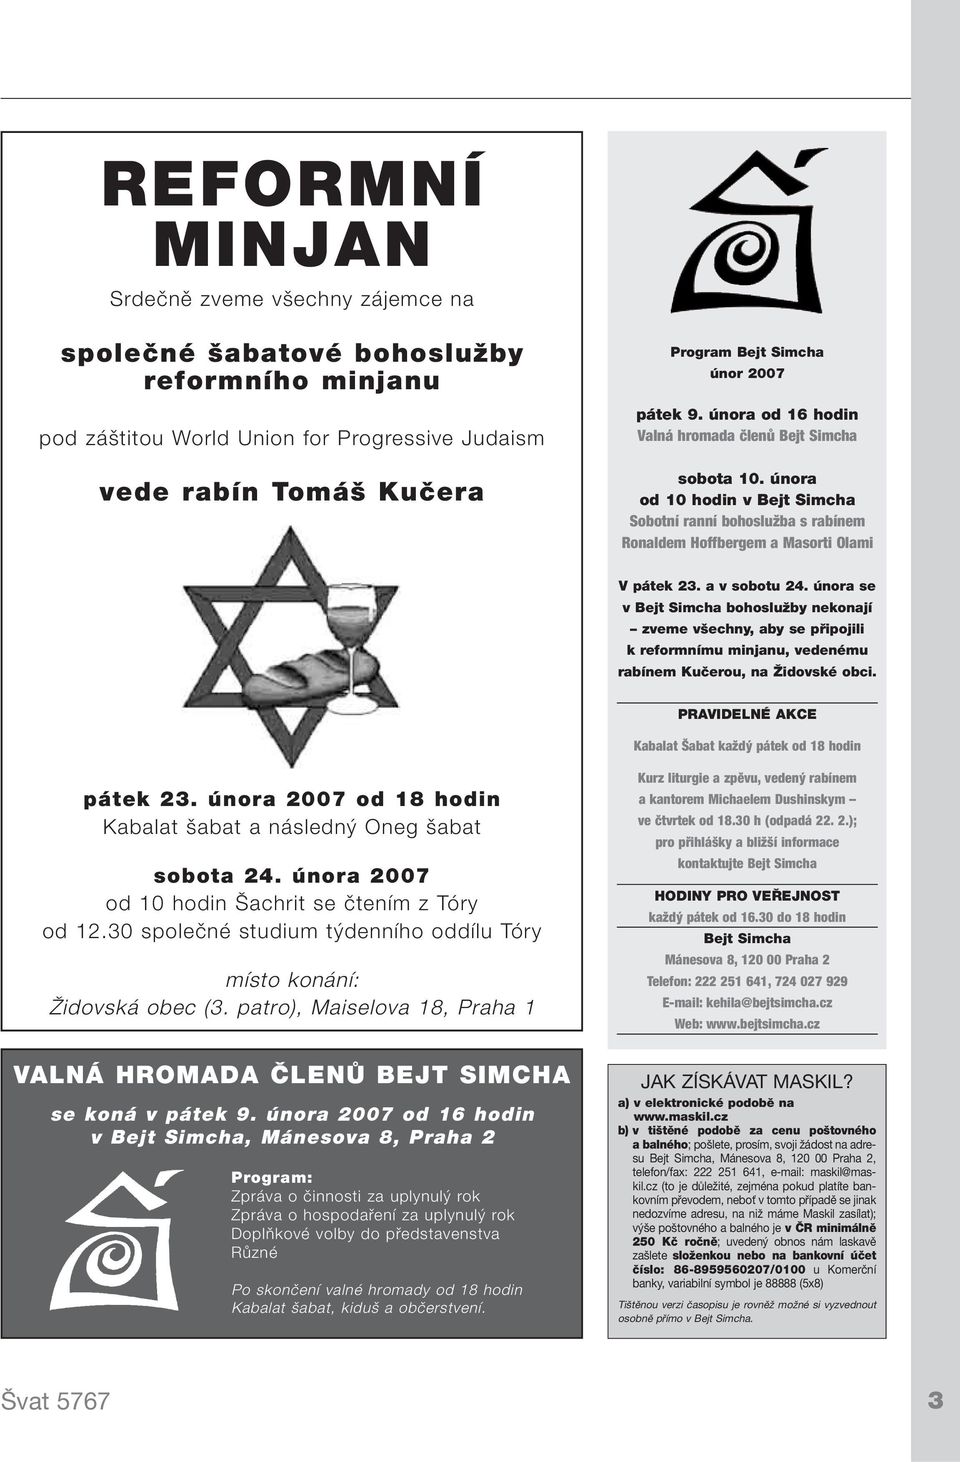 února se v Bejt Simcha bohoslužby nekonají zveme všechny, aby se připojili k reformnímu minjanu, vedenému rabínem Kučerou, na Židovské obci.